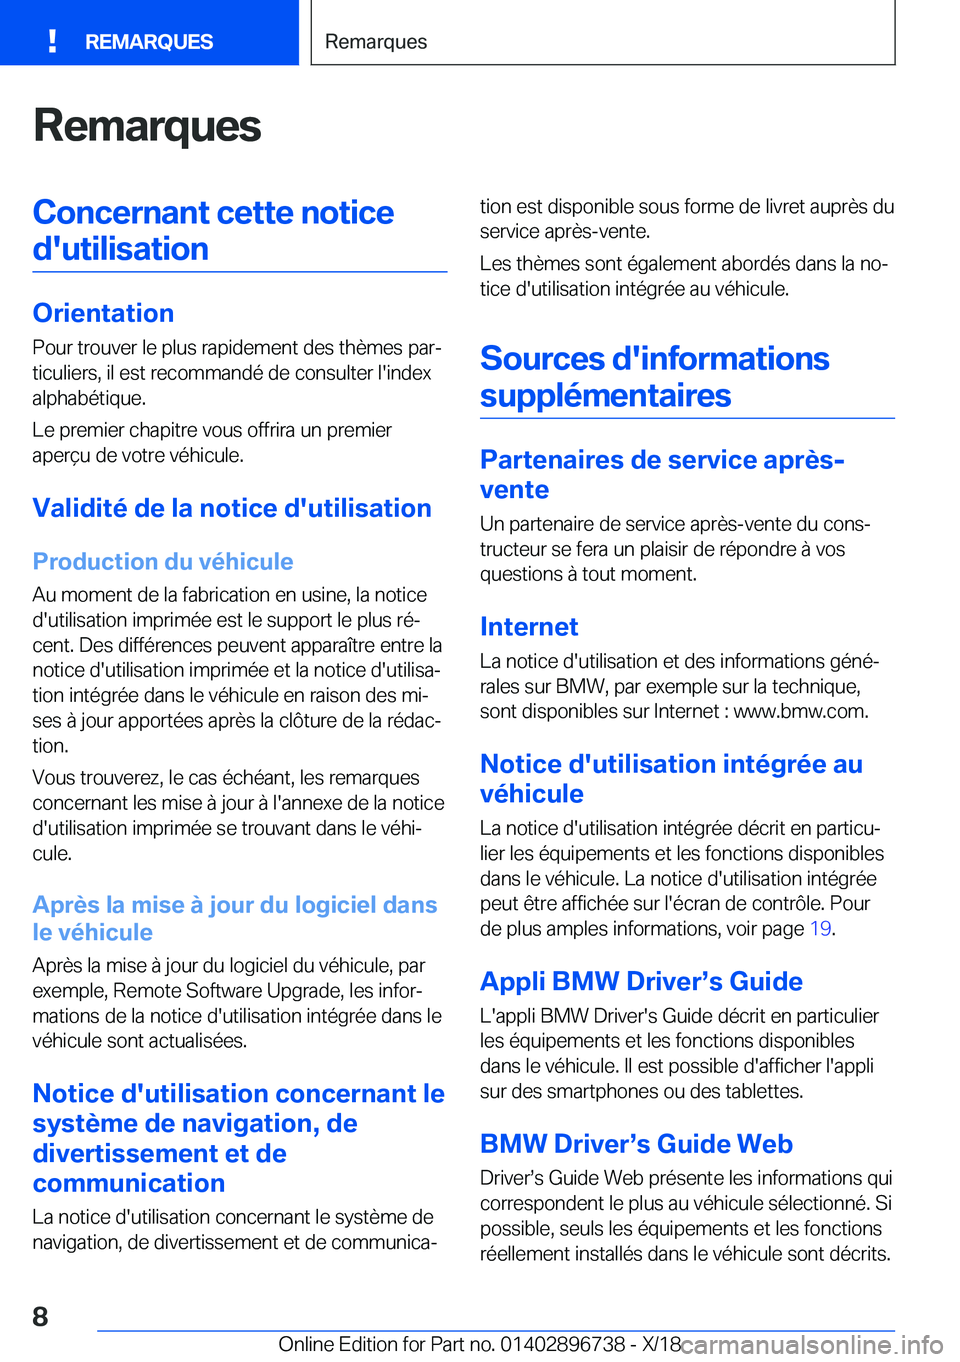 BMW X5 2019  Notices Demploi (in French) �R�e�m�a�r�q�u�e�s�C�o�n�c�e�r�n�a�n�t��c�e�t�t�e��n�o�t�i�c�e�d�'�u�t�i�l�i�s�a�t�i�o�n
�O�r�i�e�n�t�a�t�i�o�n �P�o�u�r��t�r�o�u�v�e�r��l�e��p�l�u�s��r�a�p�i�d�e�m�e�n�t��d�e�s��t�h�è�m�